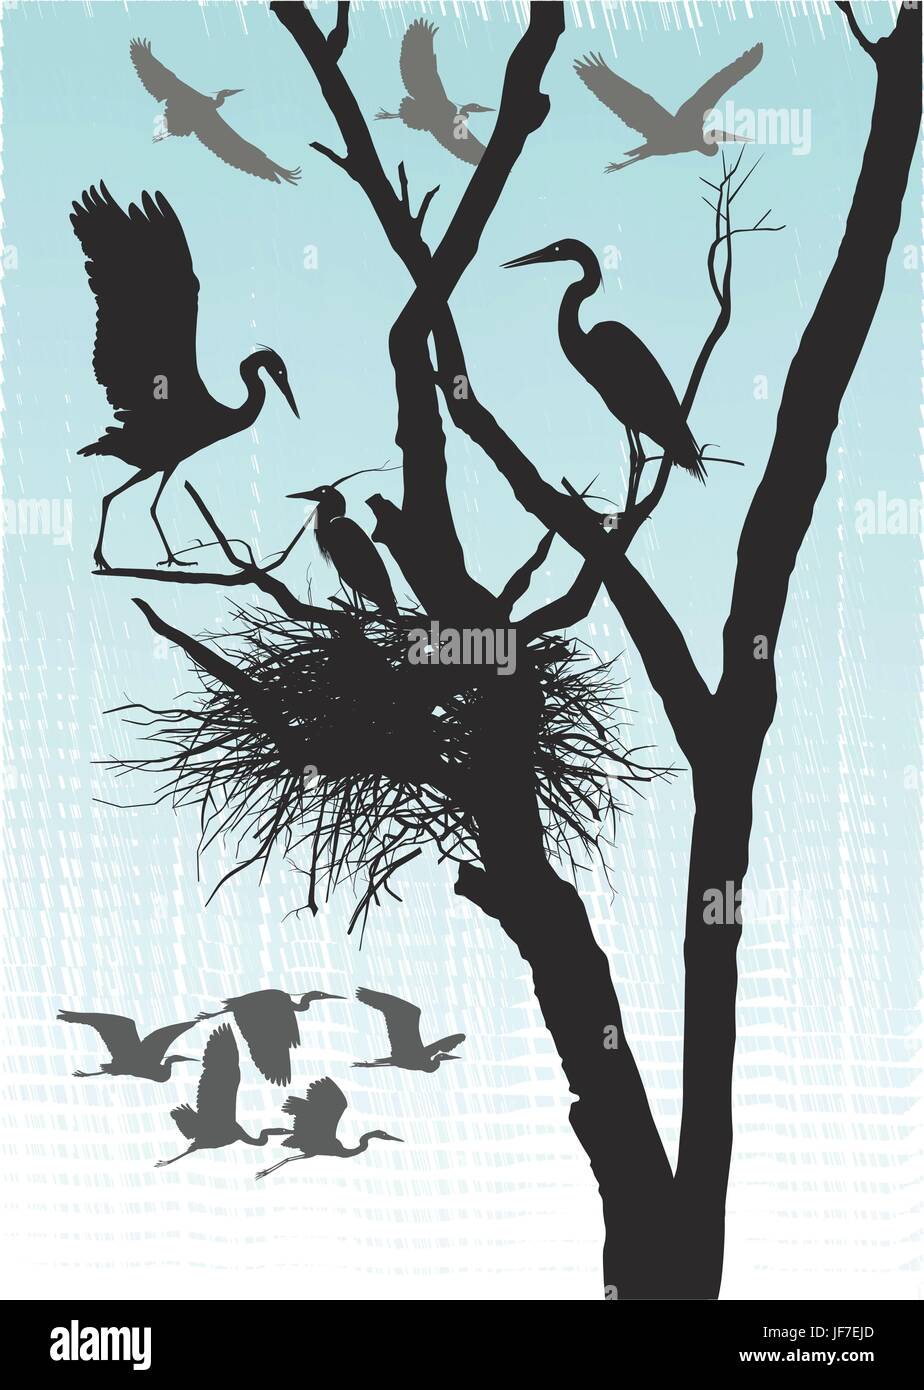 Animaux, arbres, noir, de teint basané, jetblack, noir profond, oiseaux, nid, bec, Illustration de Vecteur